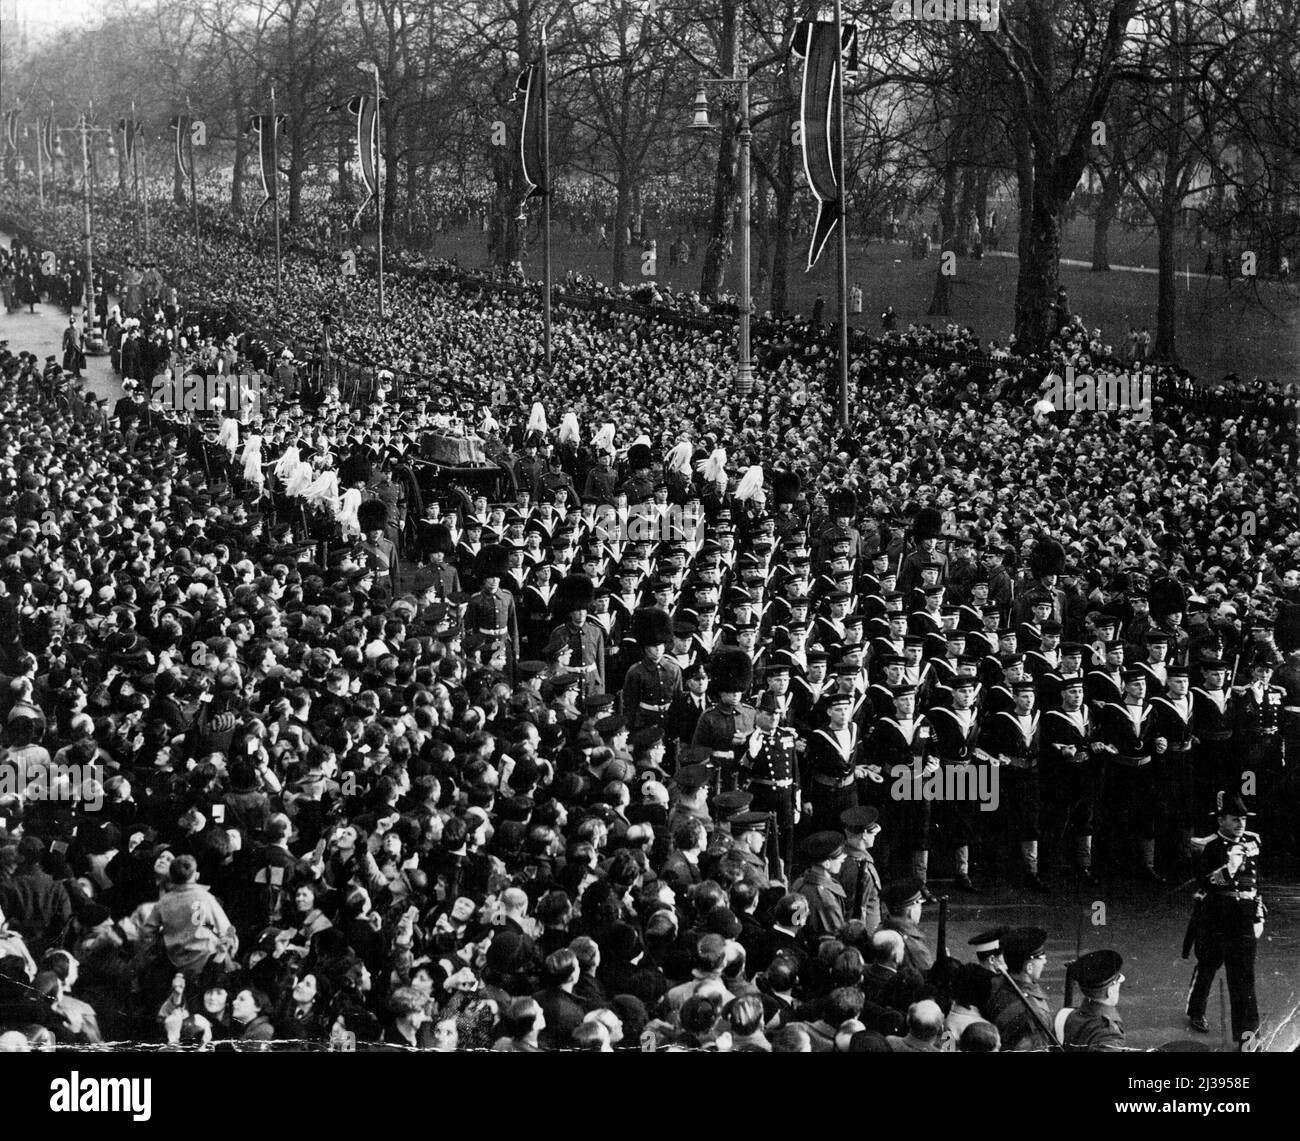 Funérailles du roi George V. Une vue générale de la procession funéraire royale passant le long de Piccadilly, Londres, W., en route depuis Westminster Hall ***** Gare de Paddington. 1 janvier 1936. (Photo par la presse d'actualité). Banque D'Images